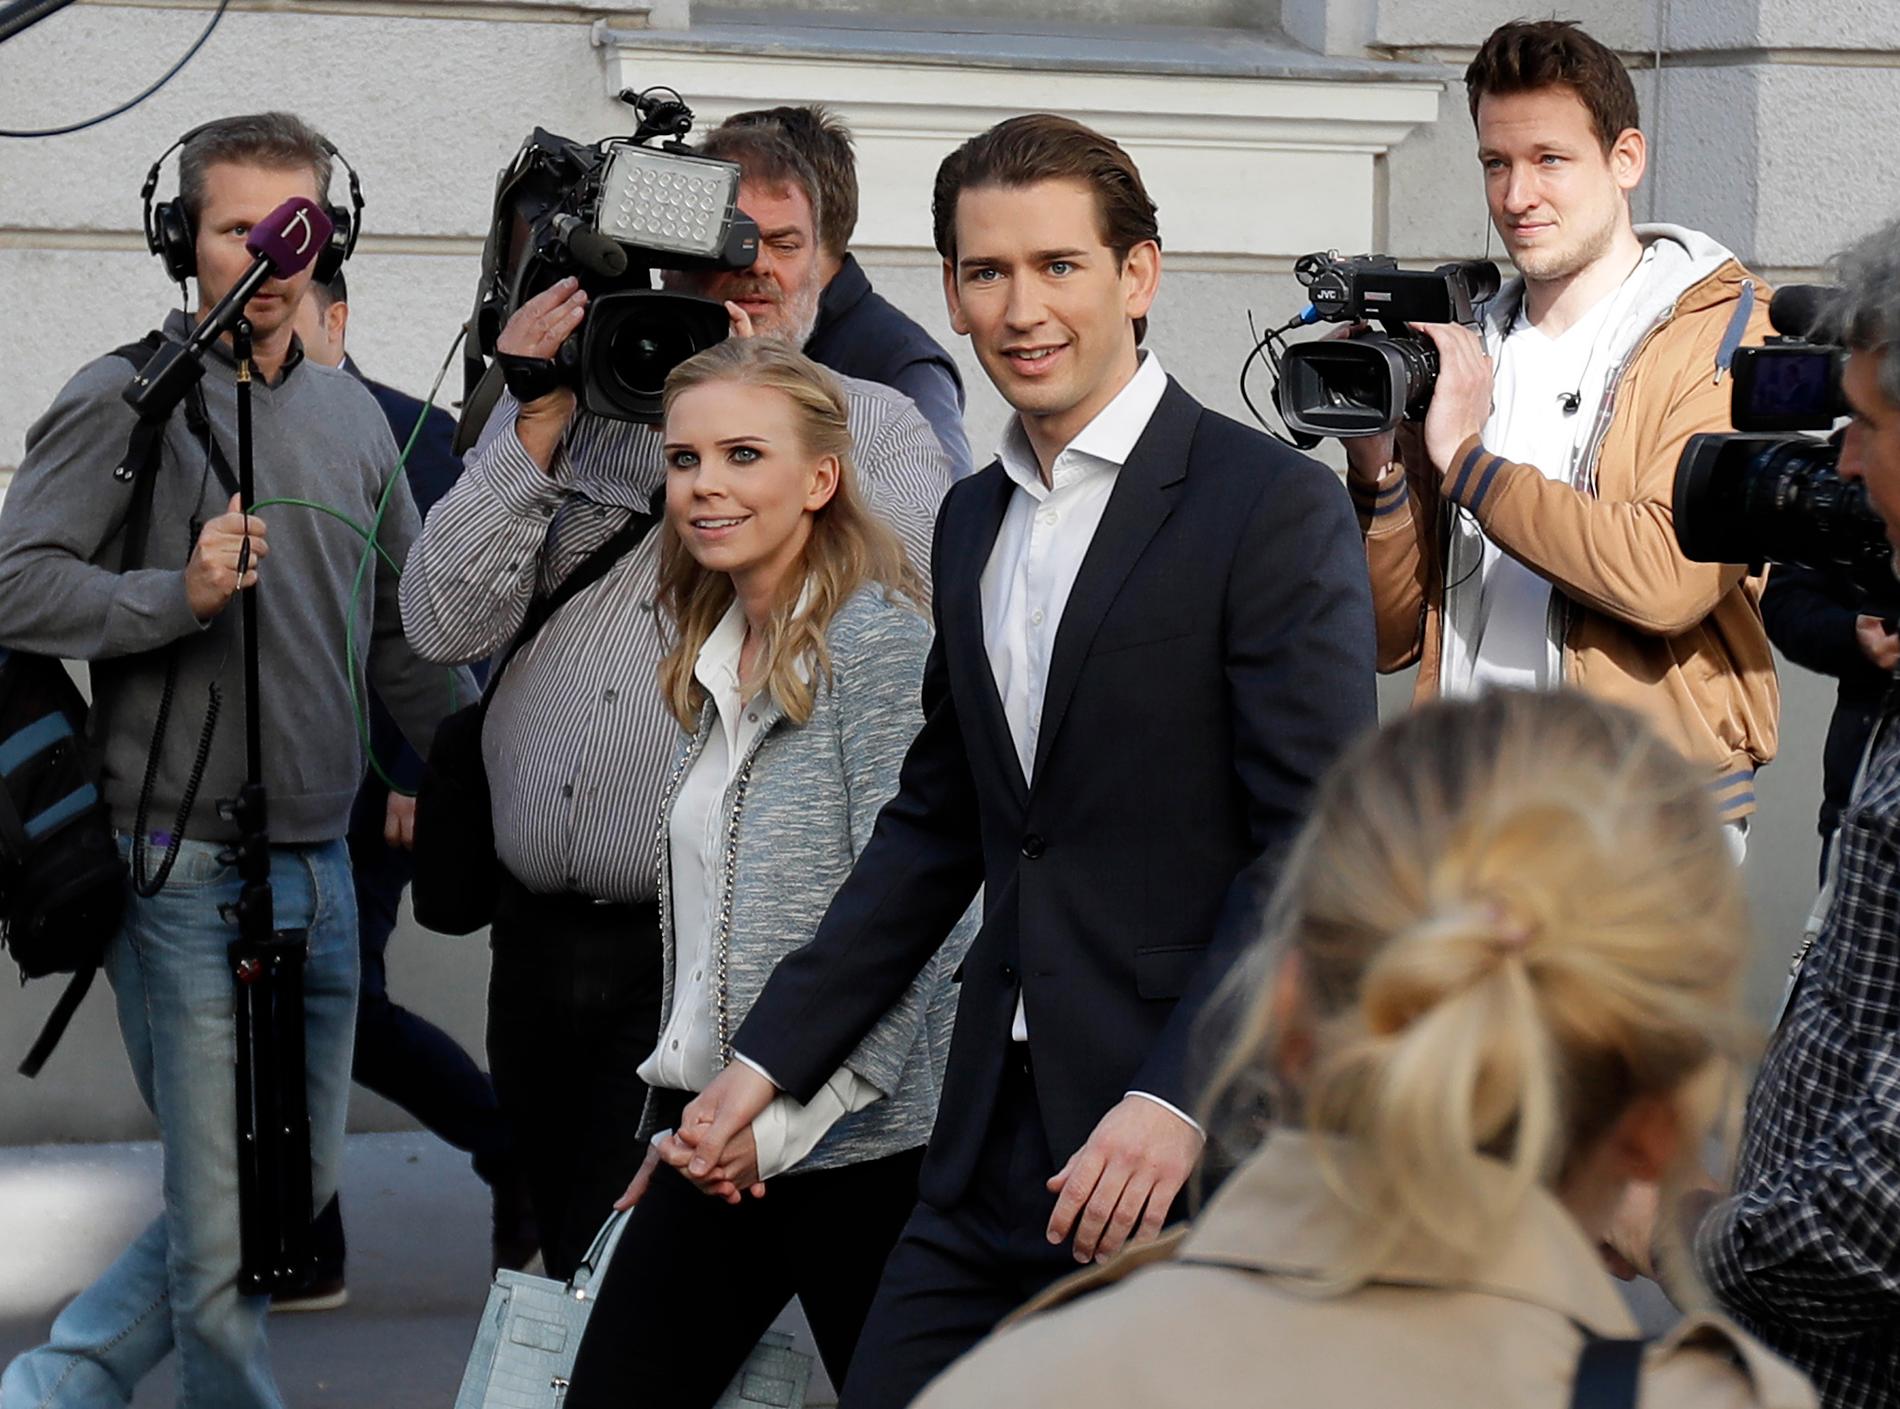 STEMMER: Østerrikes utenriksminister Sebastian Kurz (31) kan blir Europas yngste statsminister etter søndagens valg i Østerrike. Her er han og kjæresten Susanne Thier på vei til et valglokale i Wien. 